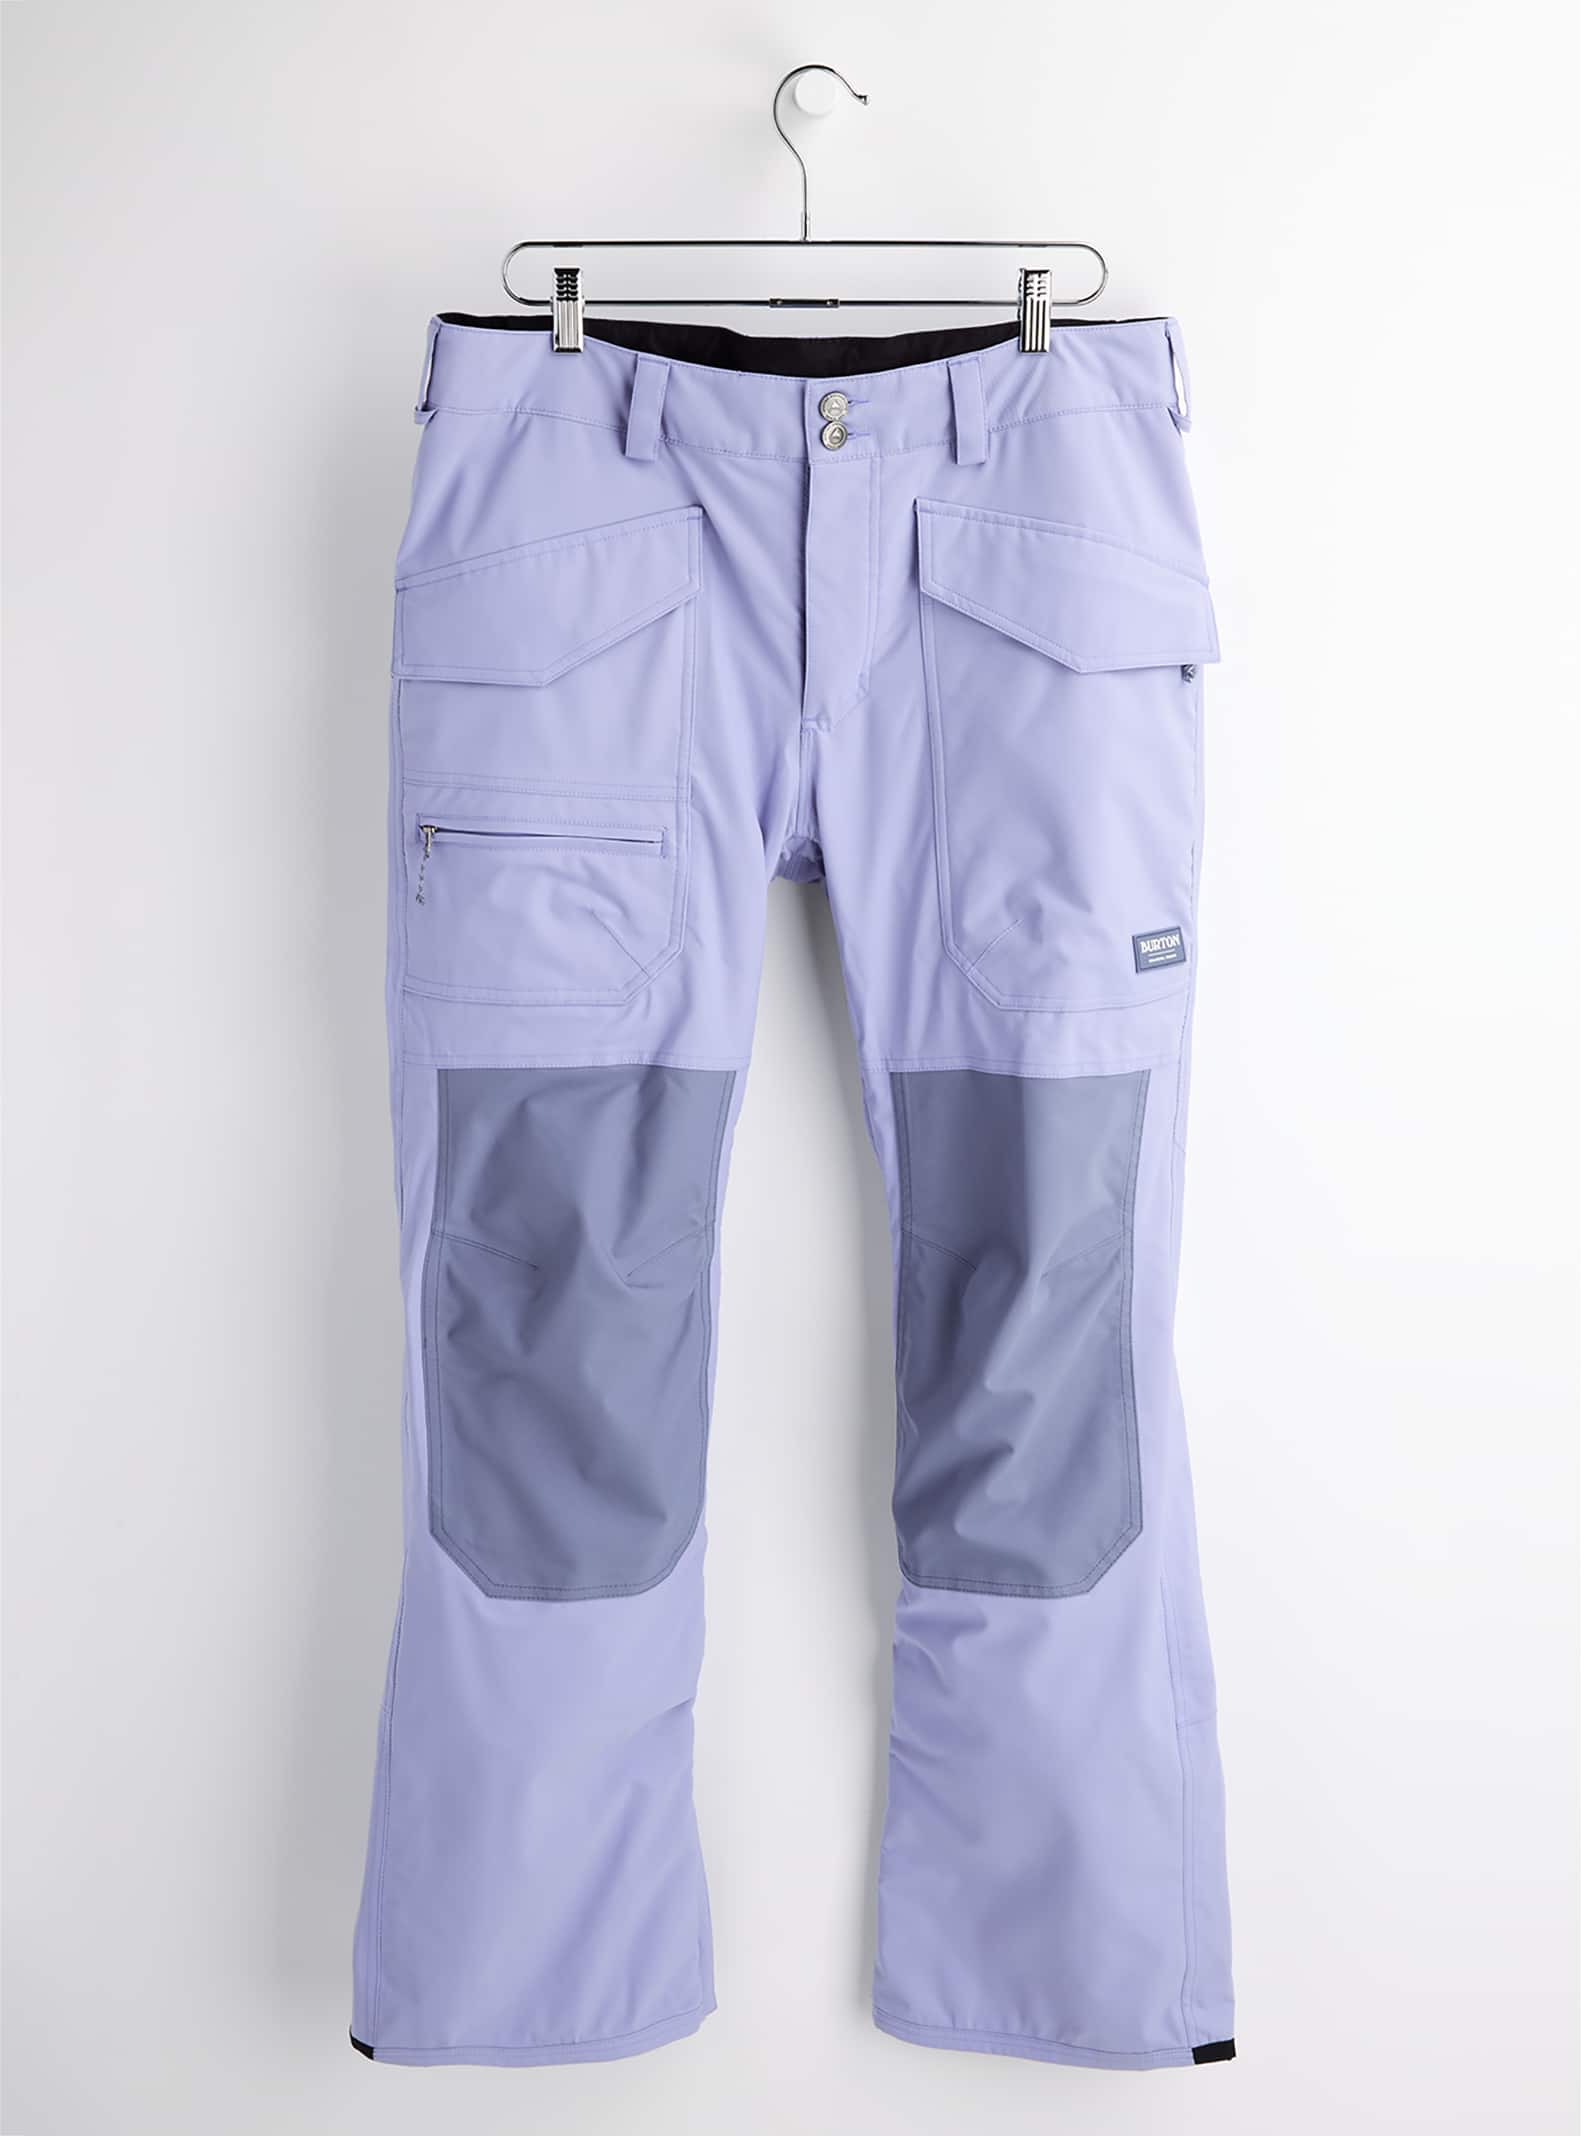 Sparrow BURTON Men's XL SOUTHSIDE Pants NWT Lowest Price XL 